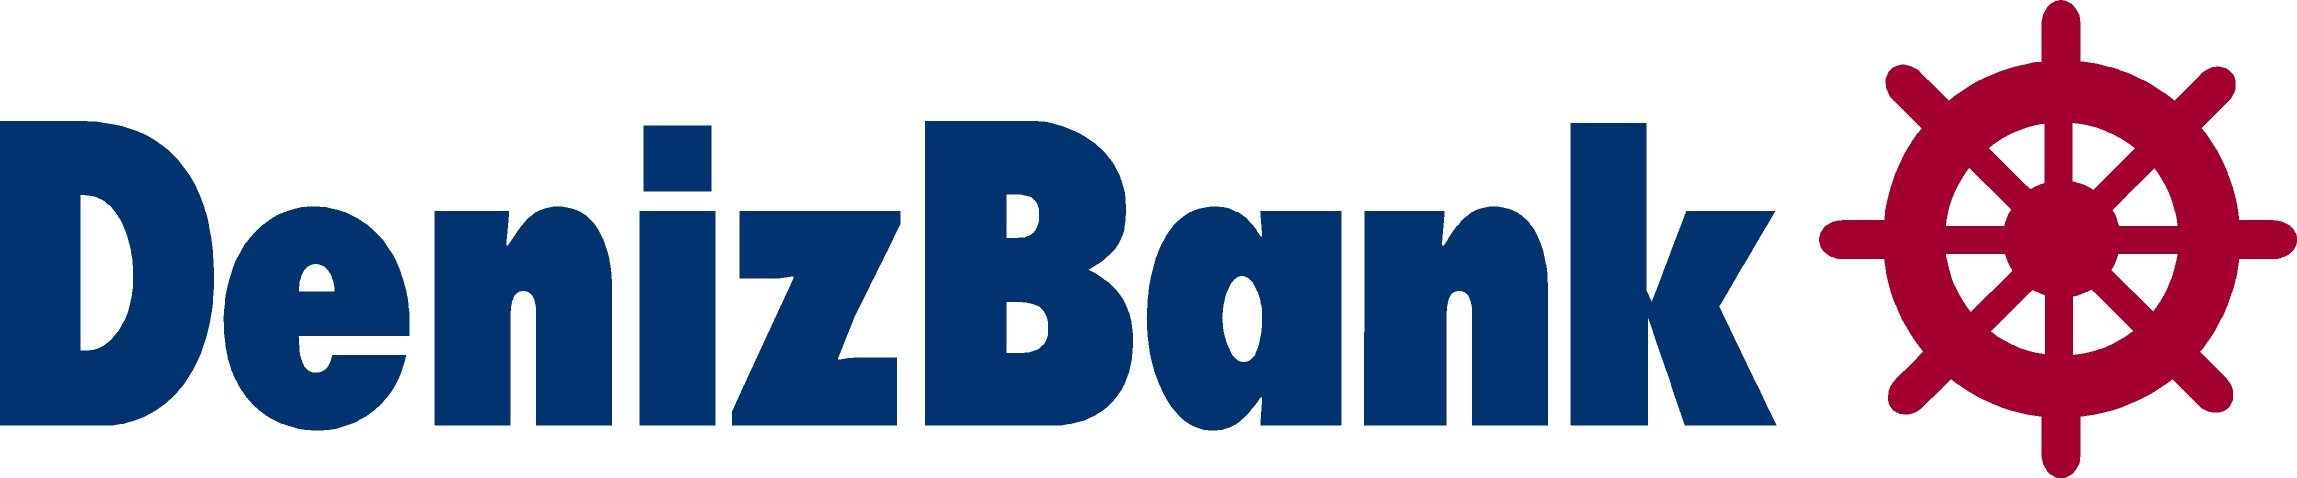 Denizbank_Logo